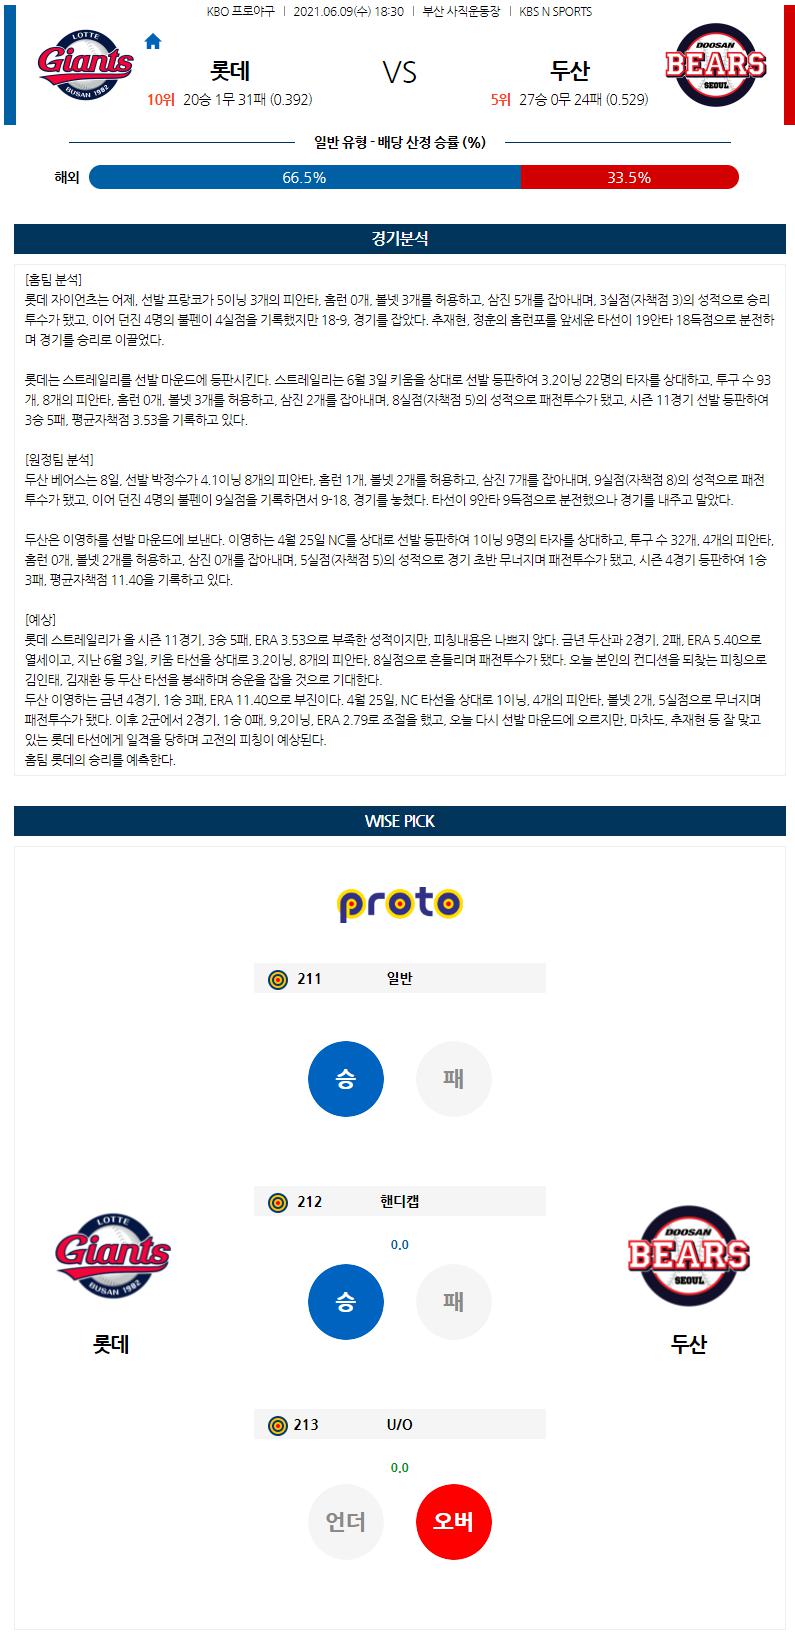 【KBO】 6월 9일 롯데 vs 두산 한국야구분석 한국야구중계 무료야구중계.png